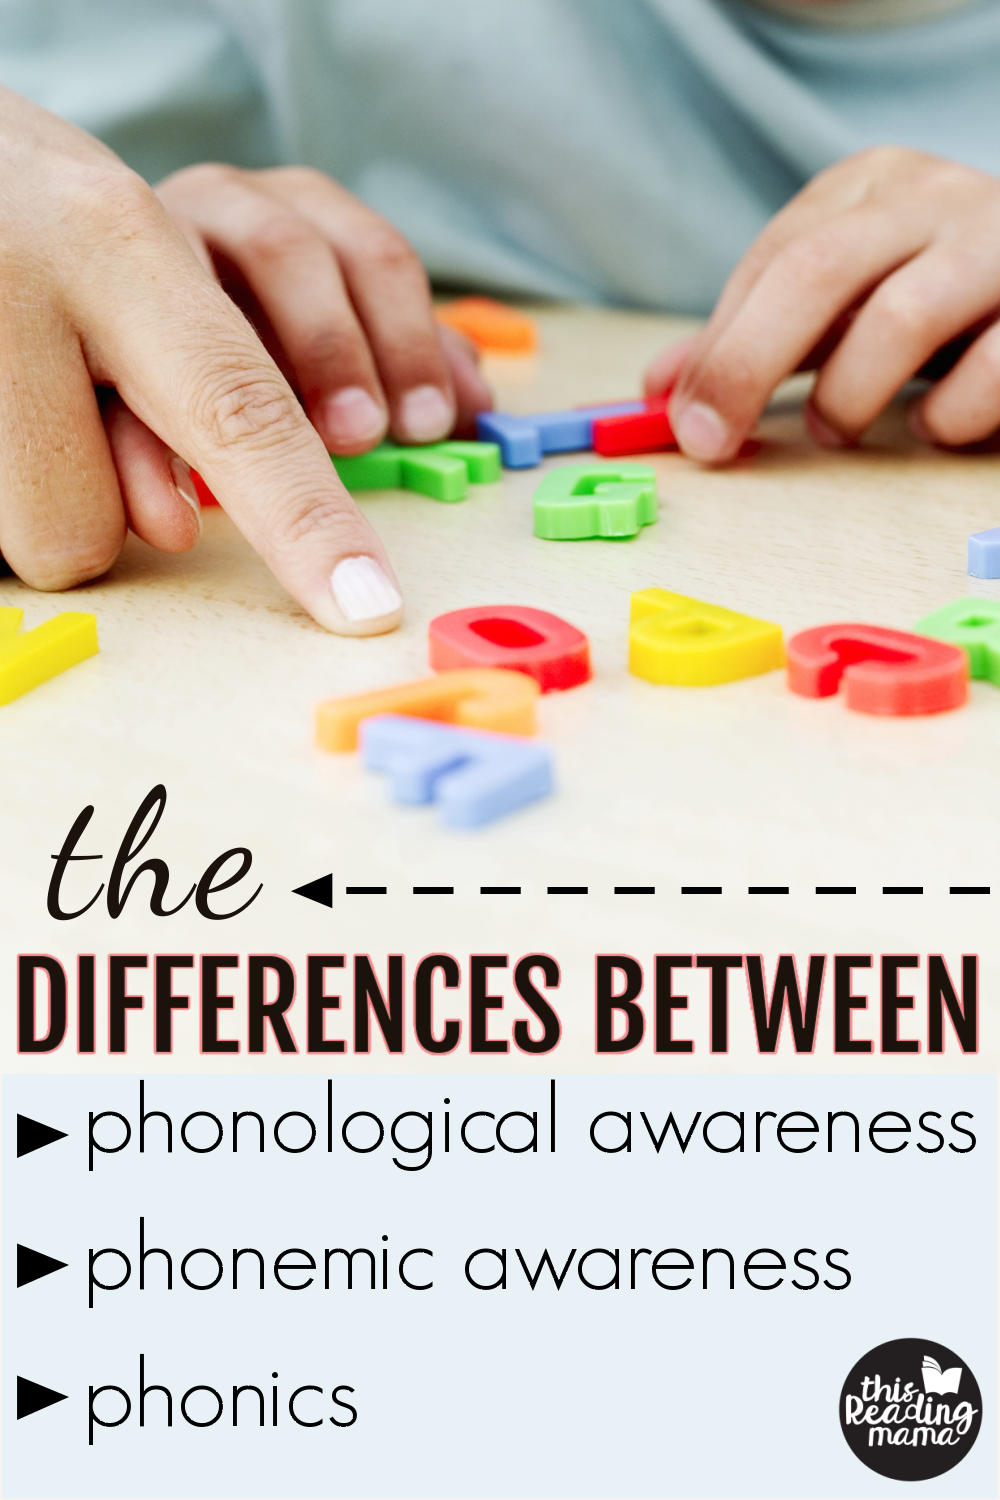 phonological-awareness-phonemic-awareness-phonics-laptrinhx-news